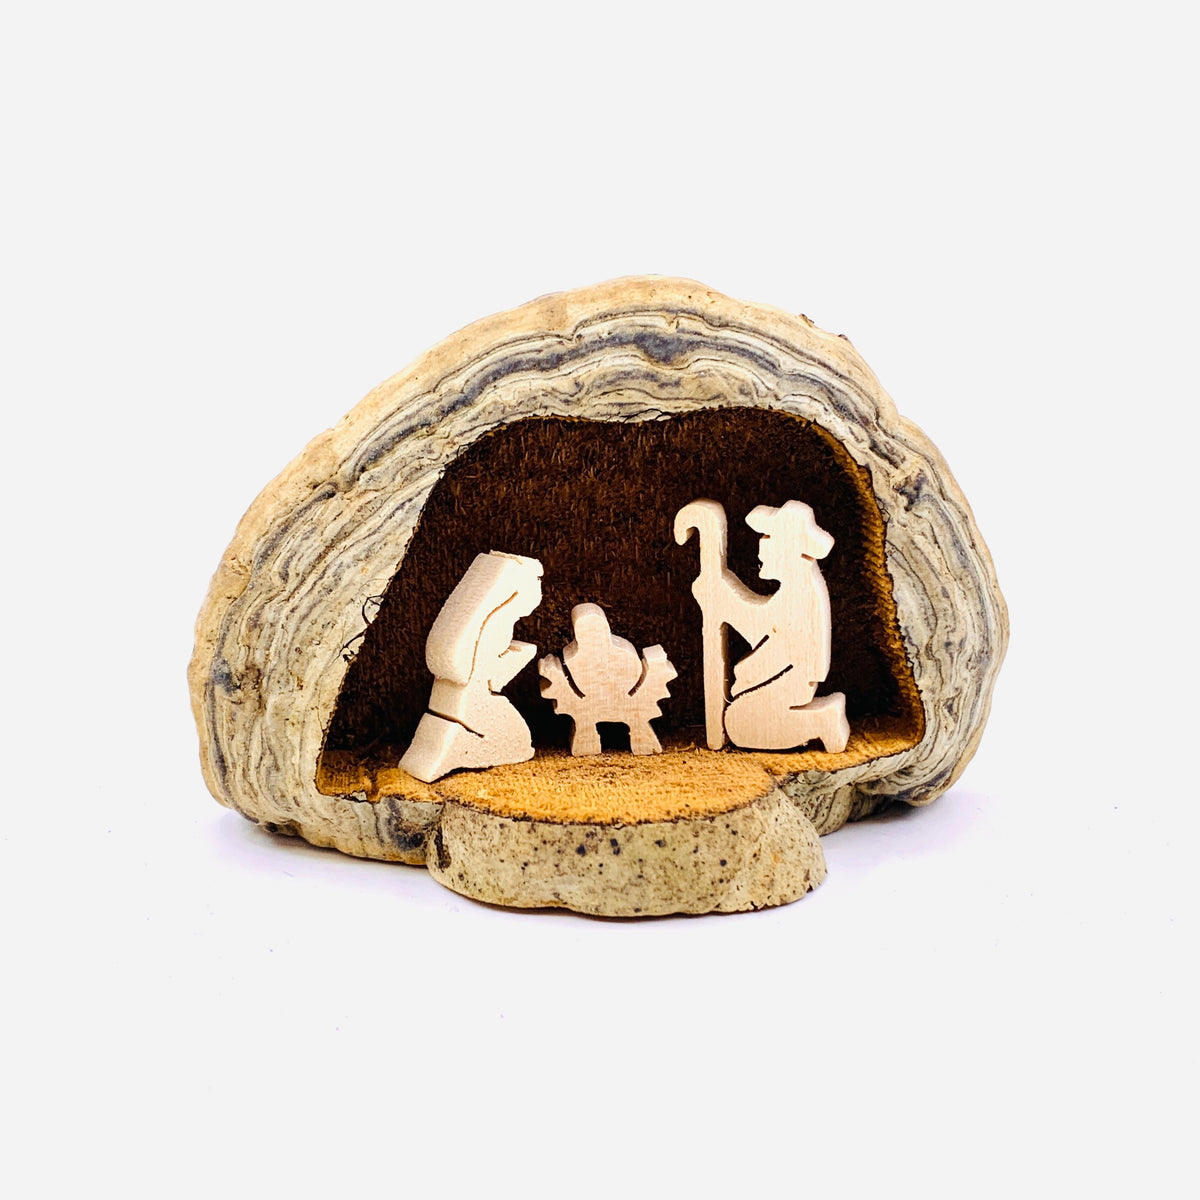 Hand Carved Wood Mushroom Crib Scene 7